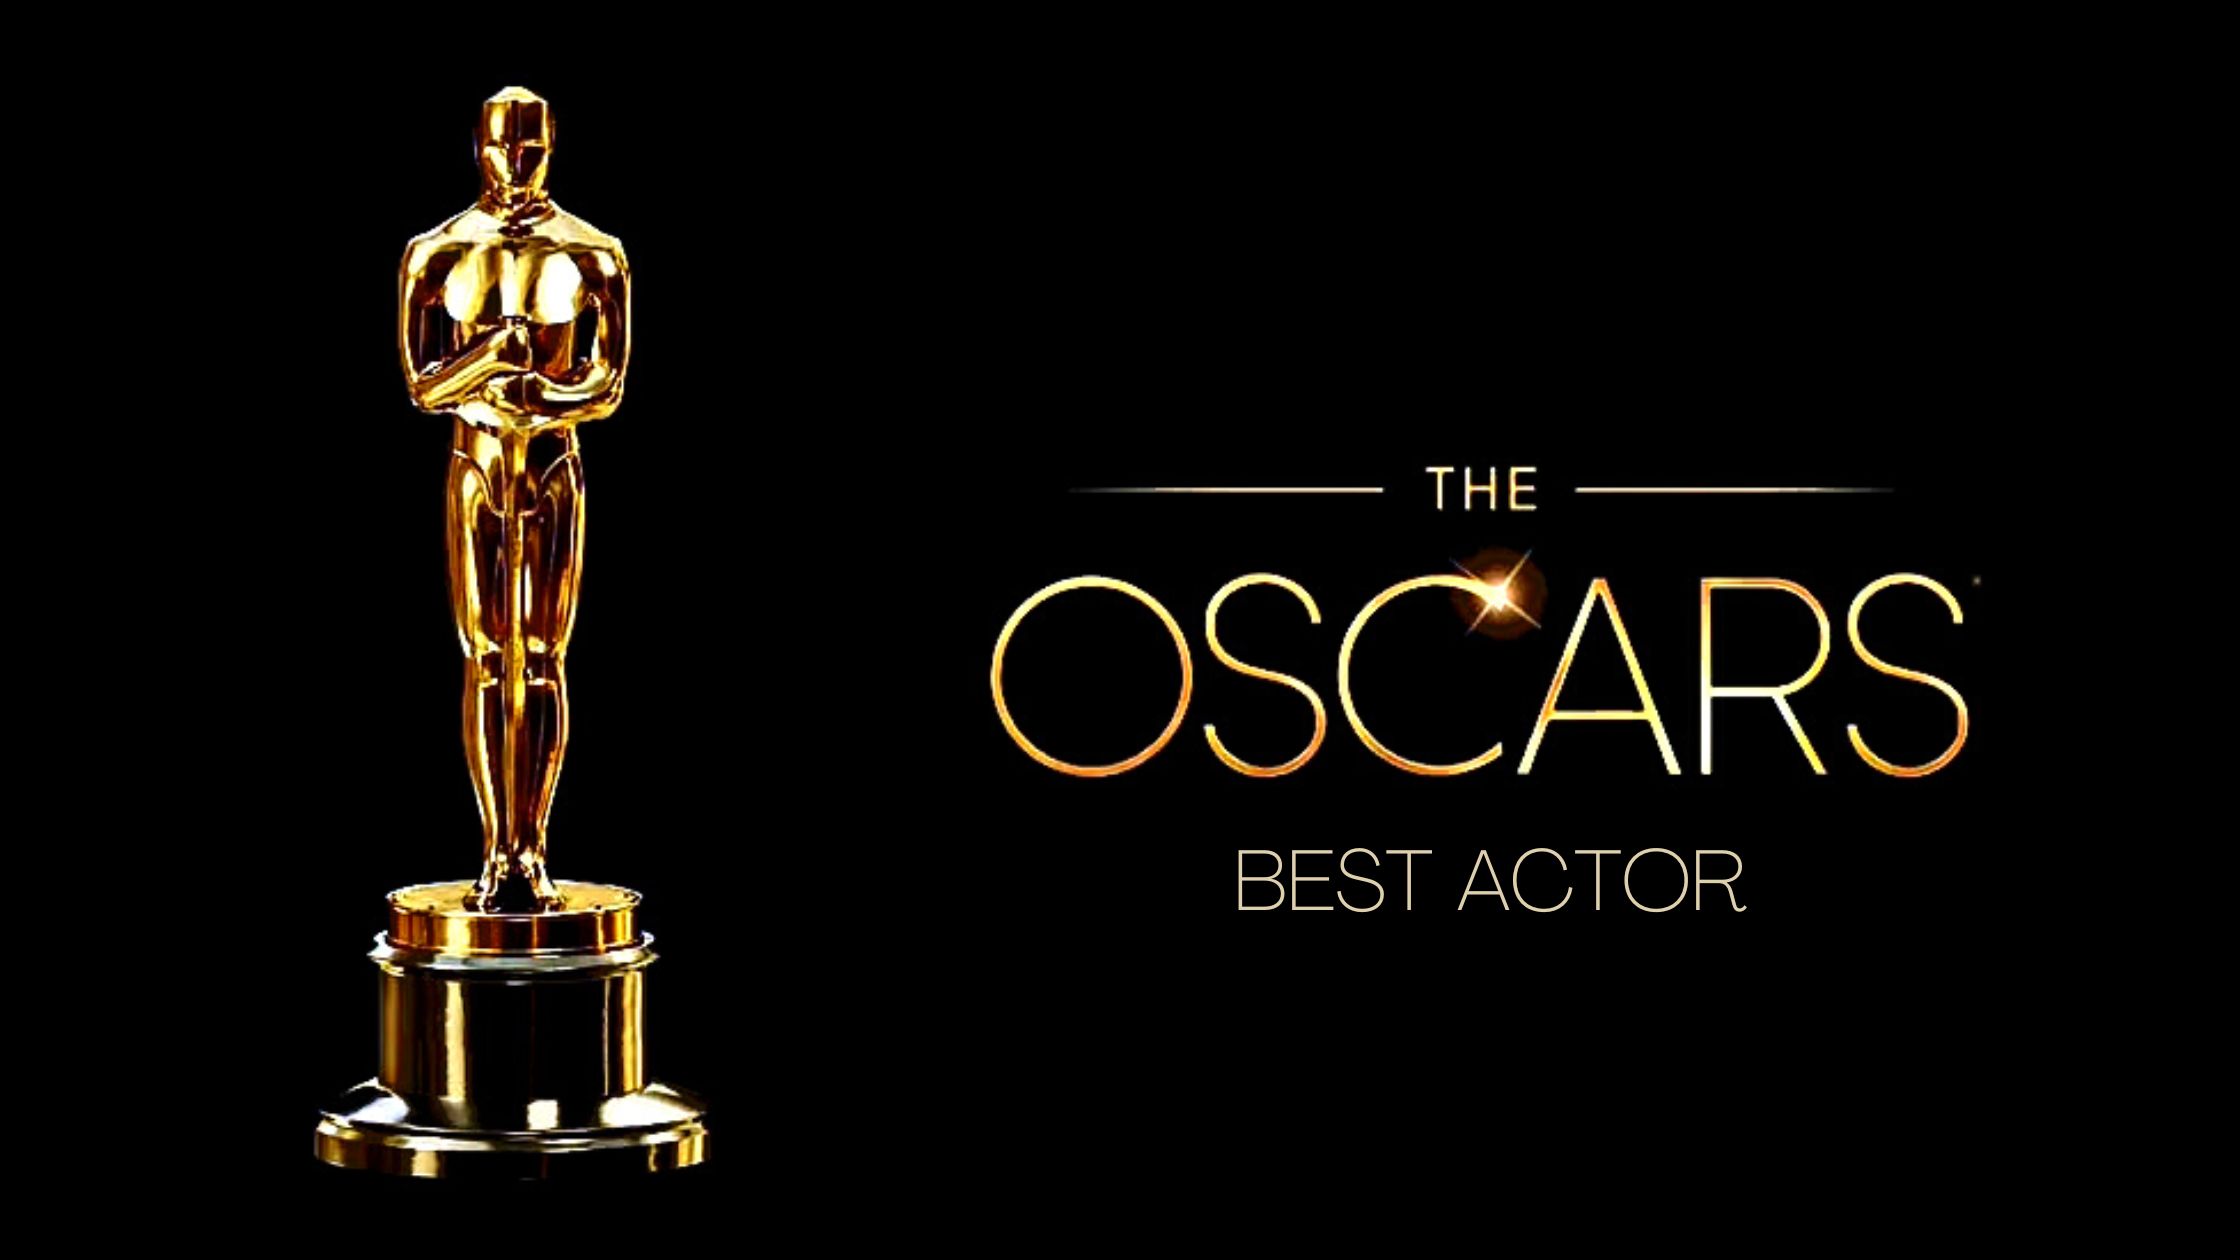 El Oscar al mejor actor en los ultimos 20 anos